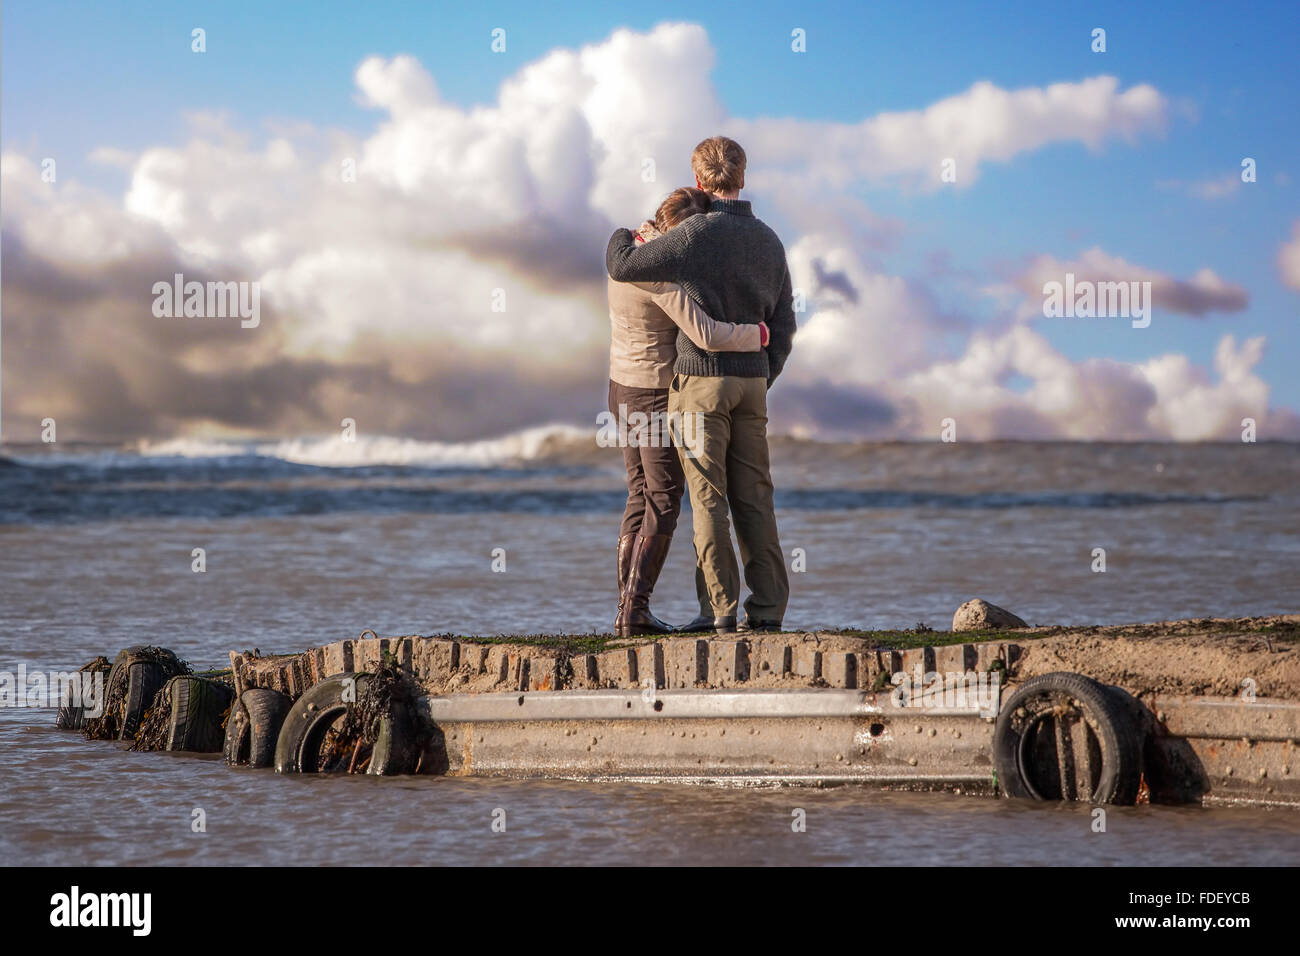 Paar am Steg am Flamborough Head, Yorkshire, mit schöne Wolken umarmen. Gutes Bild für zukünftiges Leben gemeinsam zu betrachten. Stockfoto